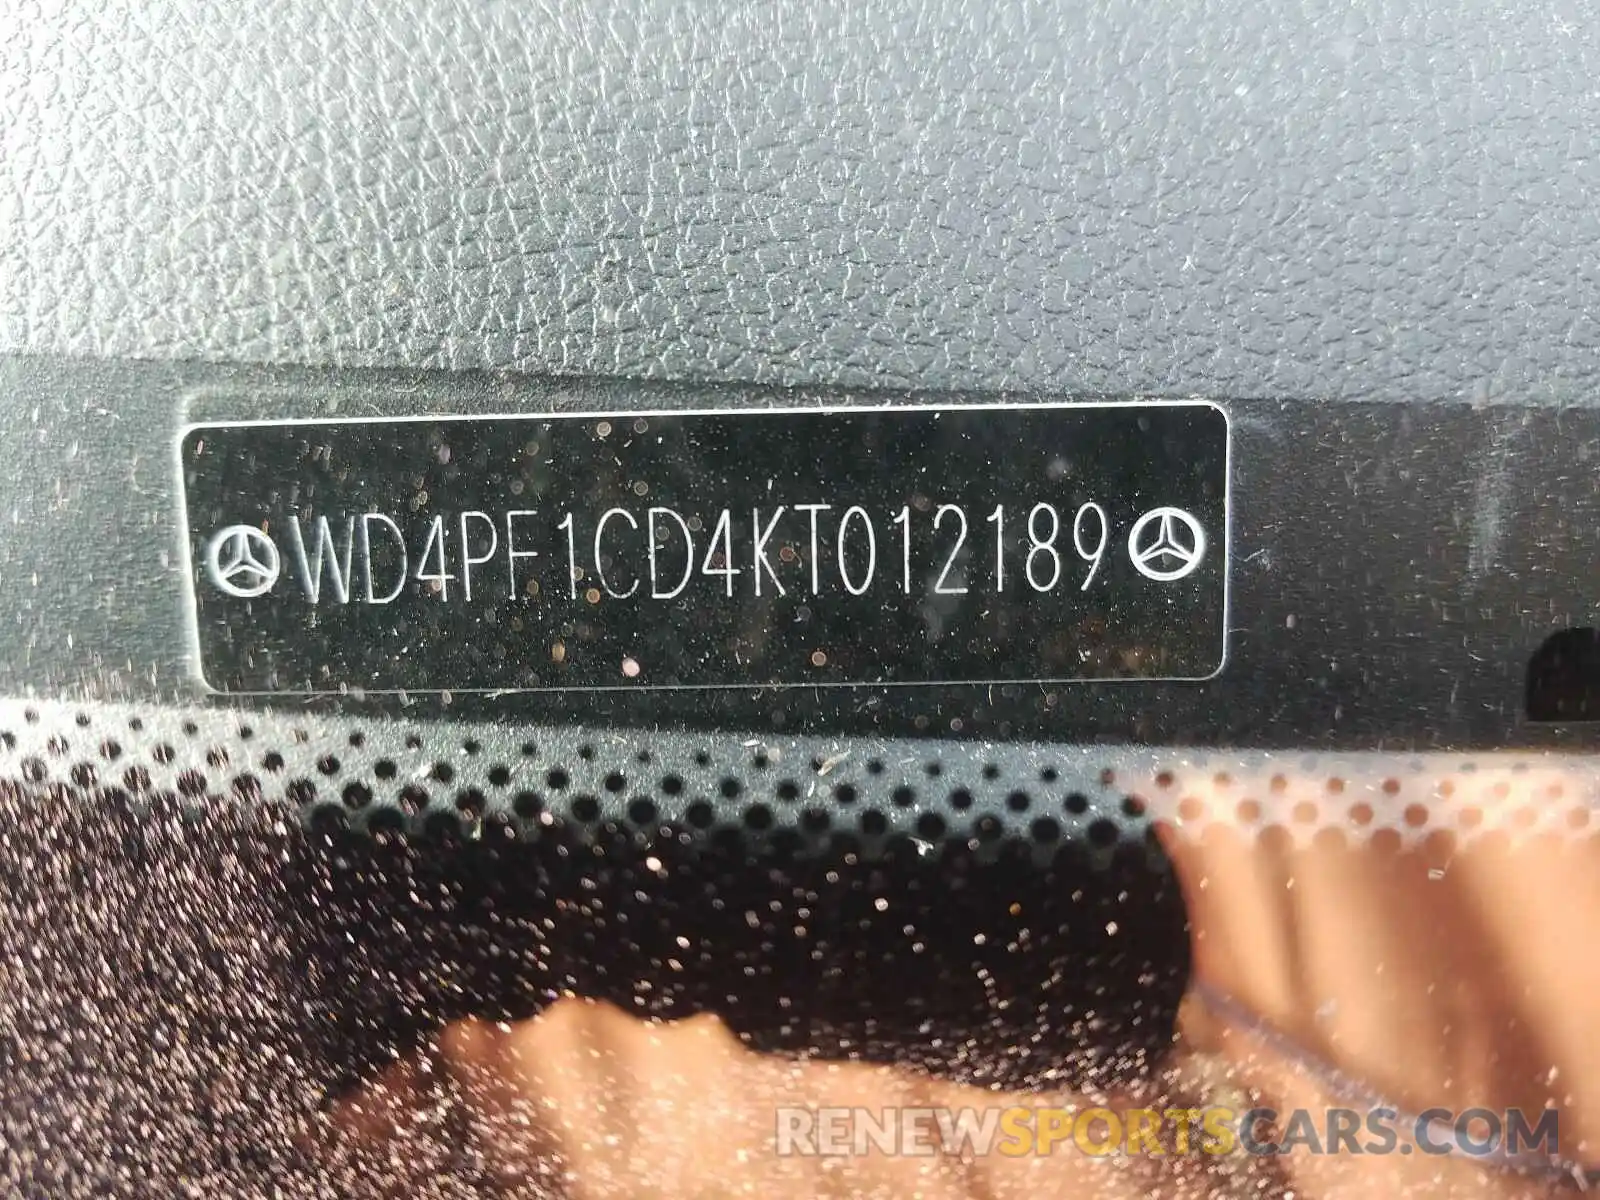 10 Photograph of a damaged car WD4PF1CD4KT012189 MERCEDES-BENZ SPRINTER 2019